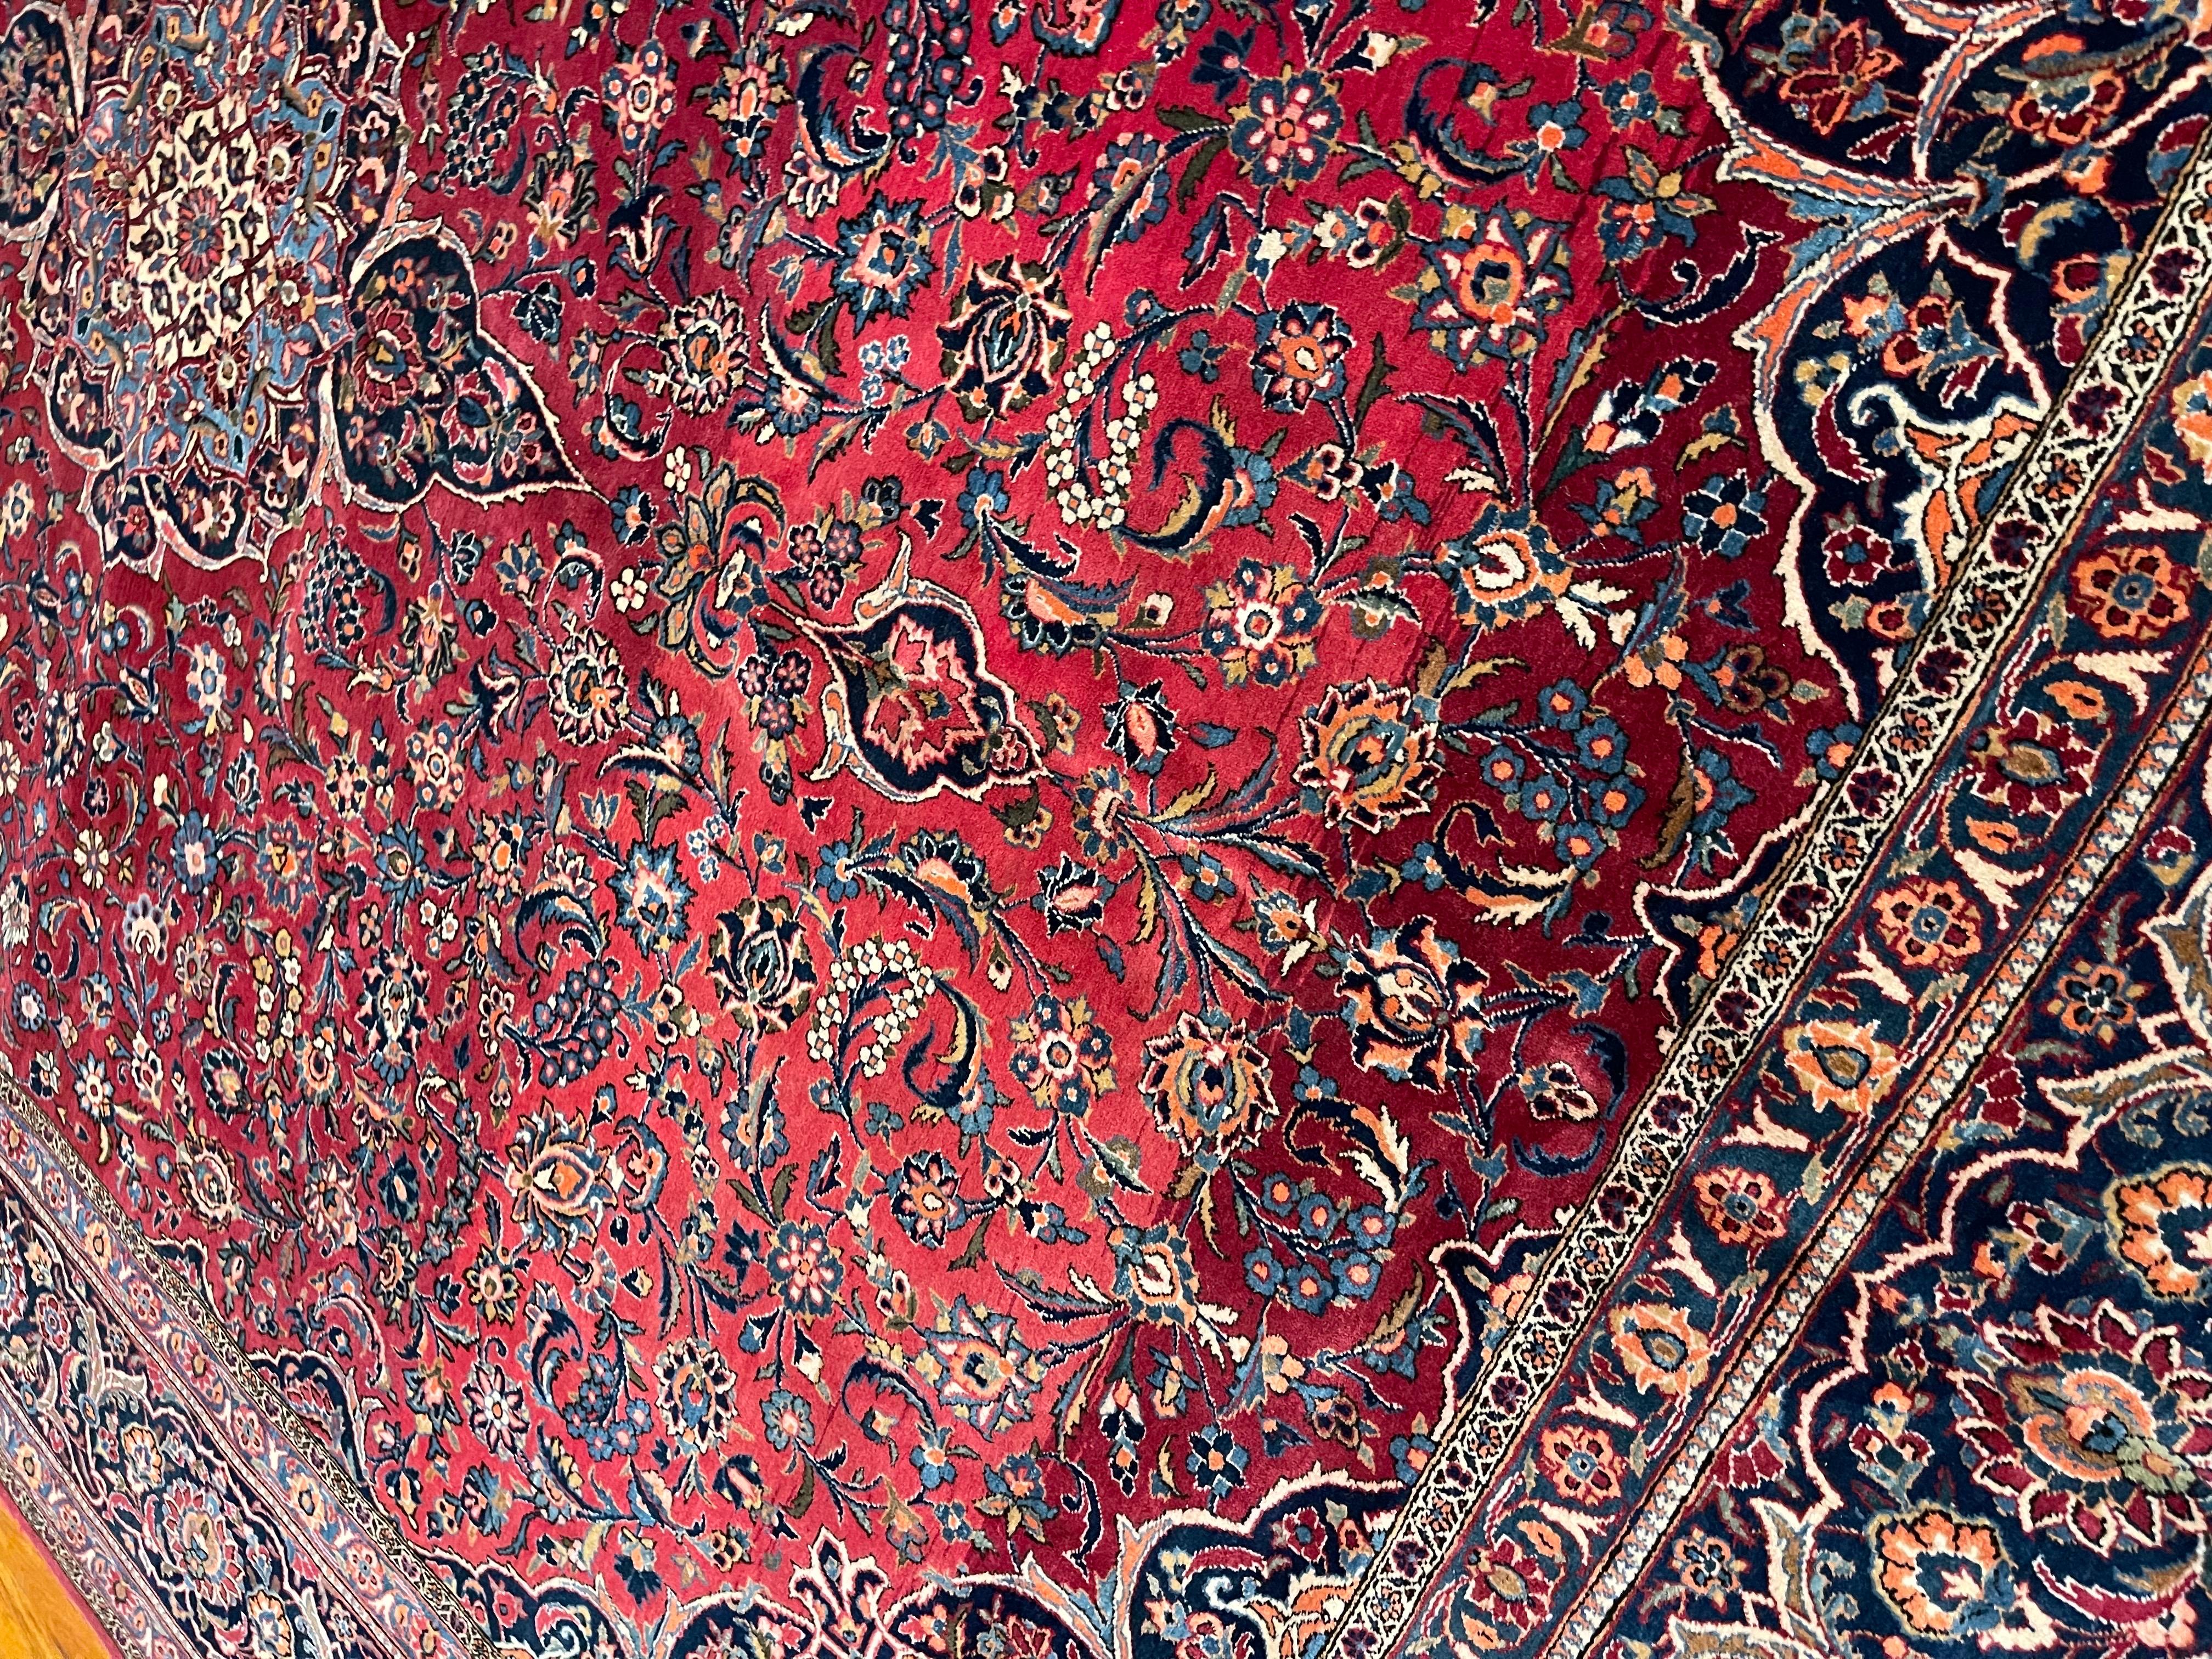 Dieser authentische, handgeknüpfte persische Kashan-Teppich ist ein exquisites Kunstwerk und verkörpert die zeitlose Schönheit und feine Handwerkskunst, die die traditionellen Klassifizierungen persischer Teppiche ausmachen. Der Flor dieses